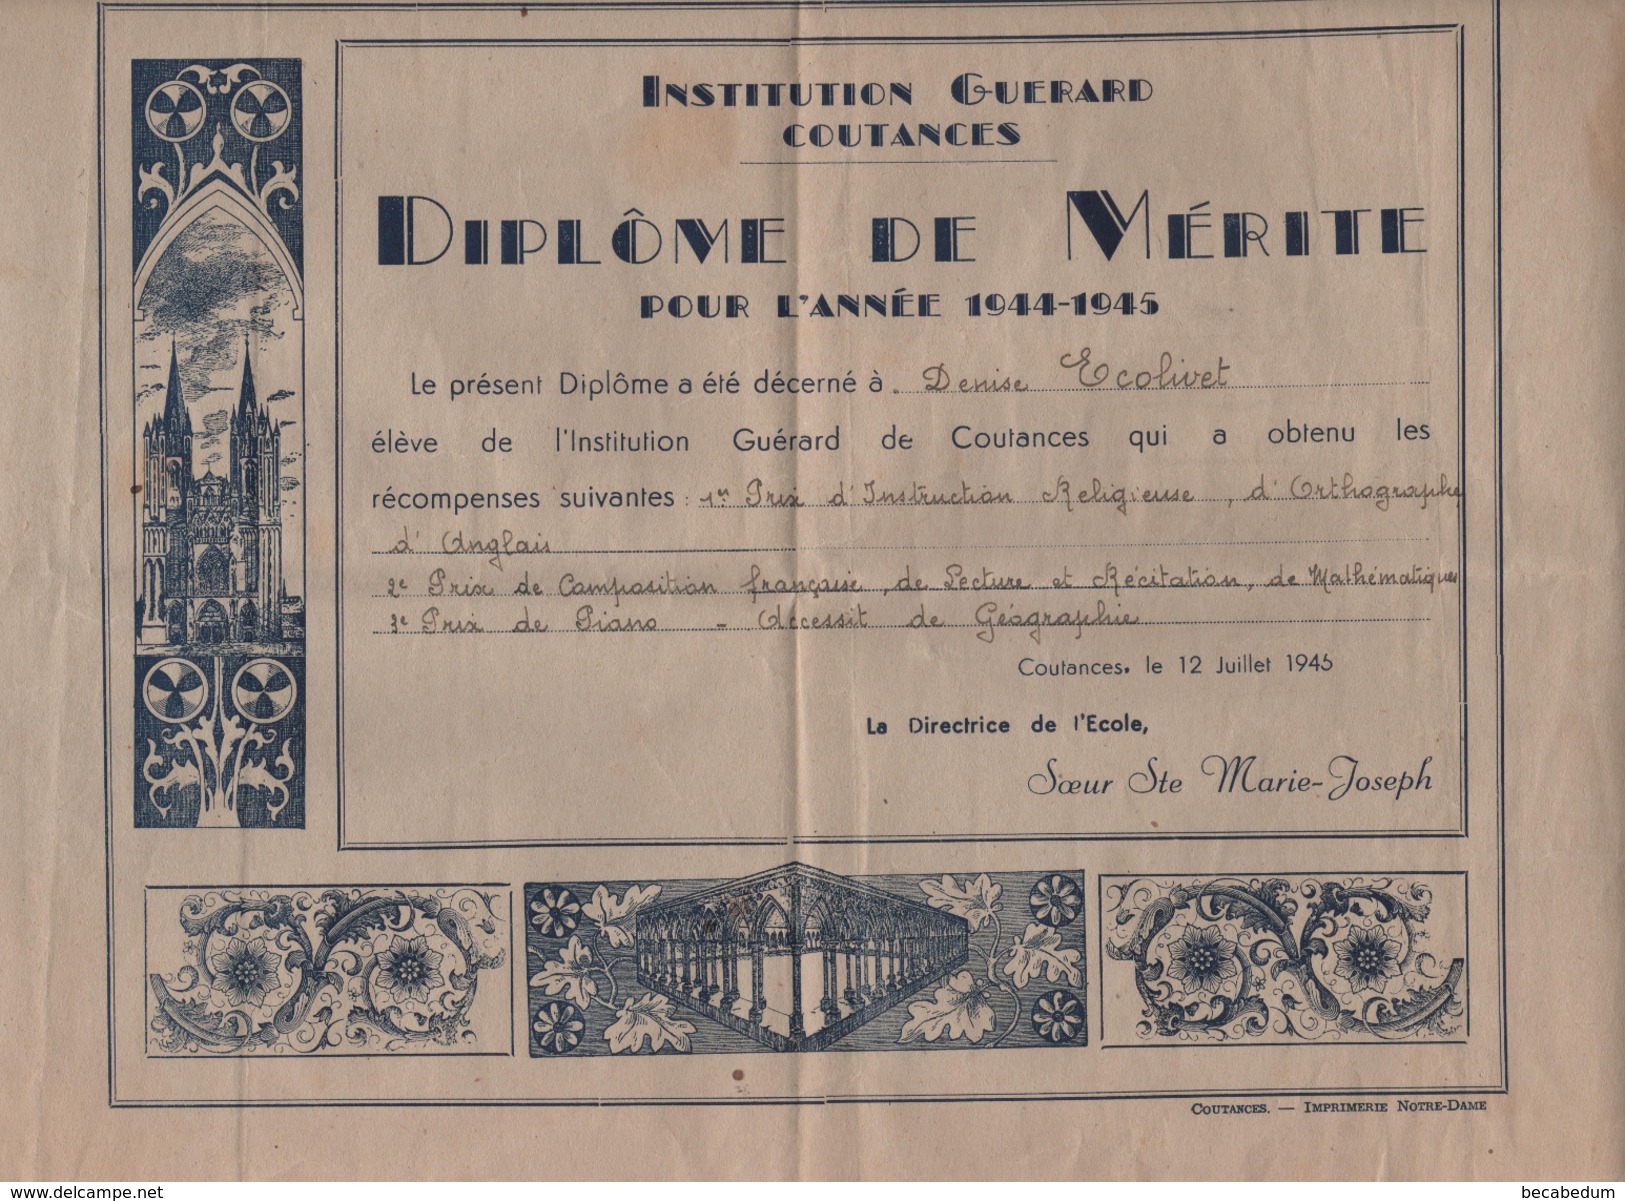 Institution Guérard Coutances Diplôme De Mérite 1944 1945 Soeur Marie Joseph  Ecolivet - Diploma & School Reports